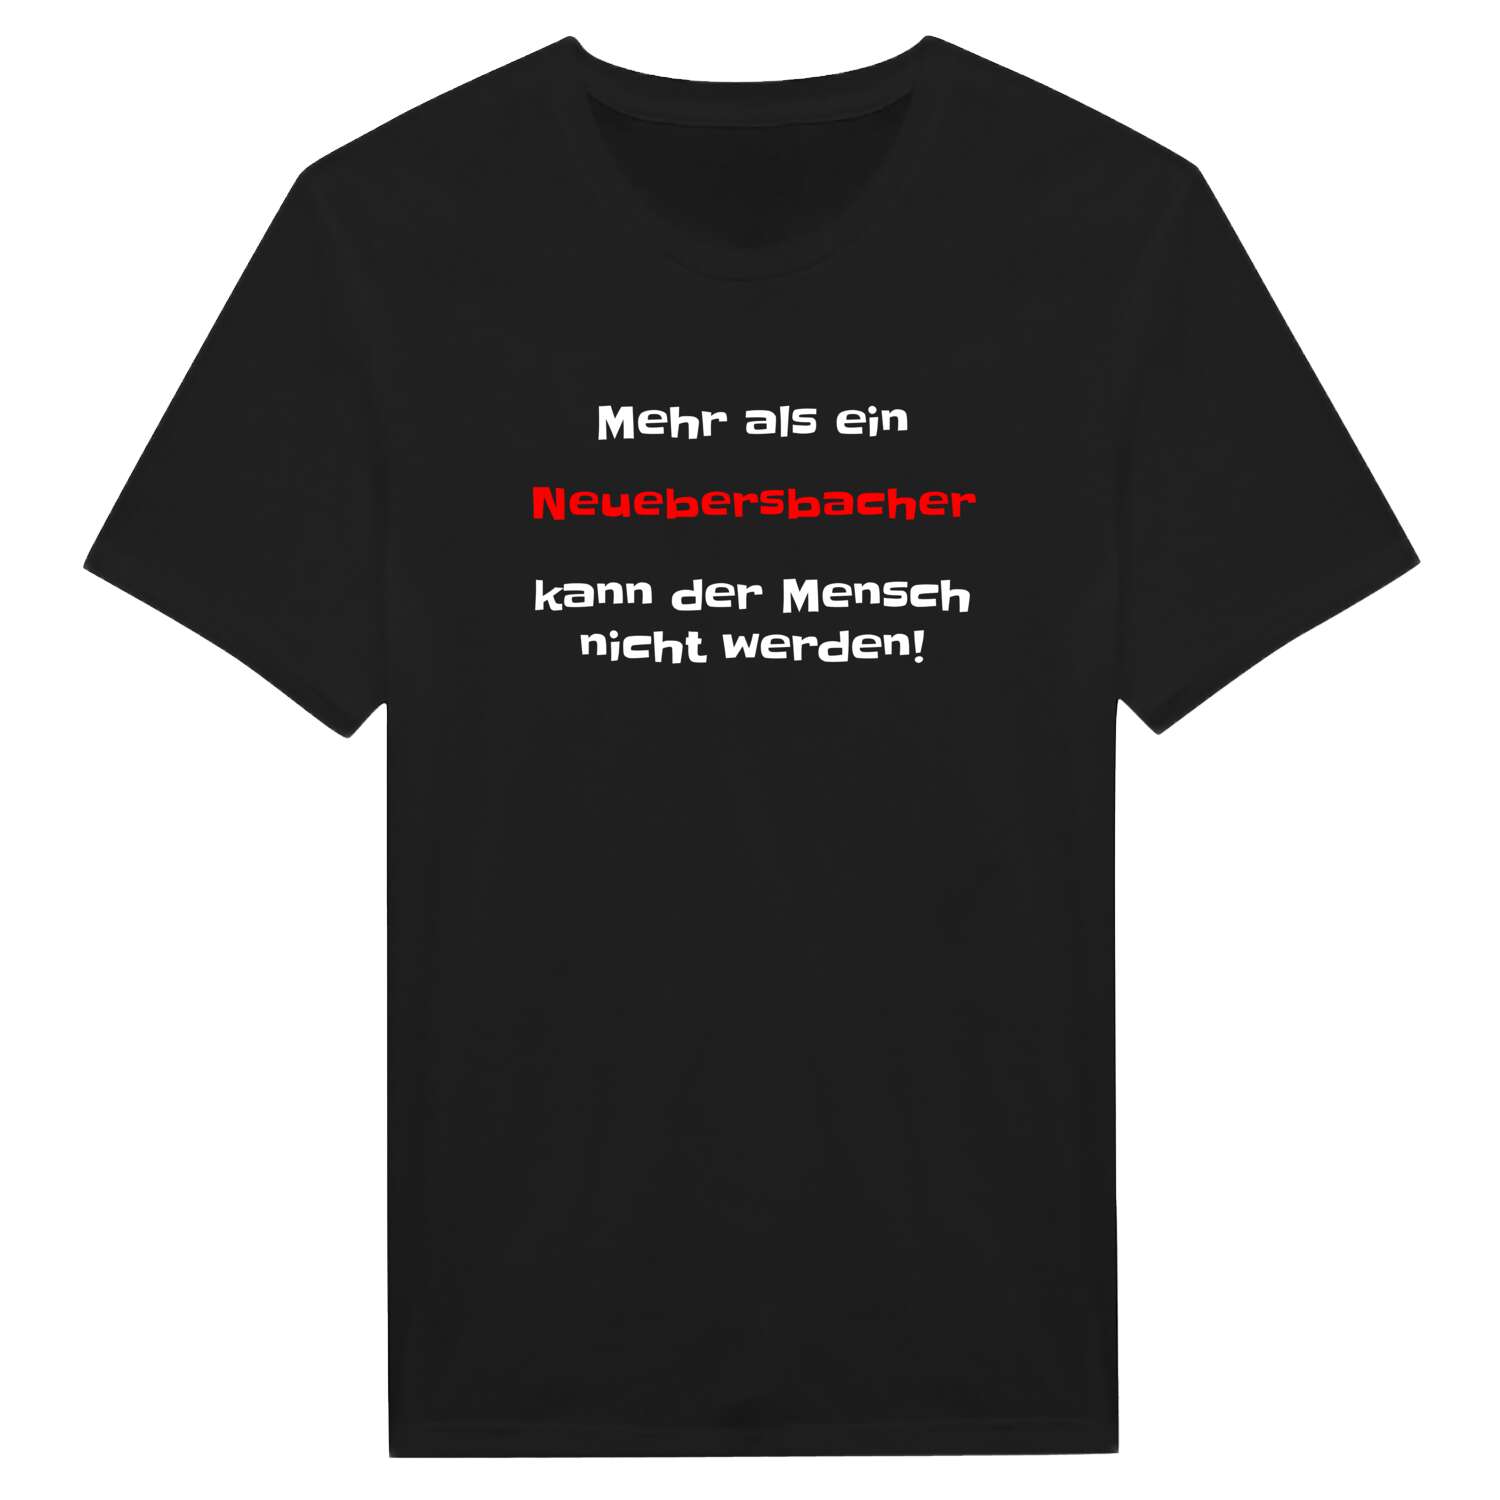 Neuebersbach T-Shirt »Mehr als ein«